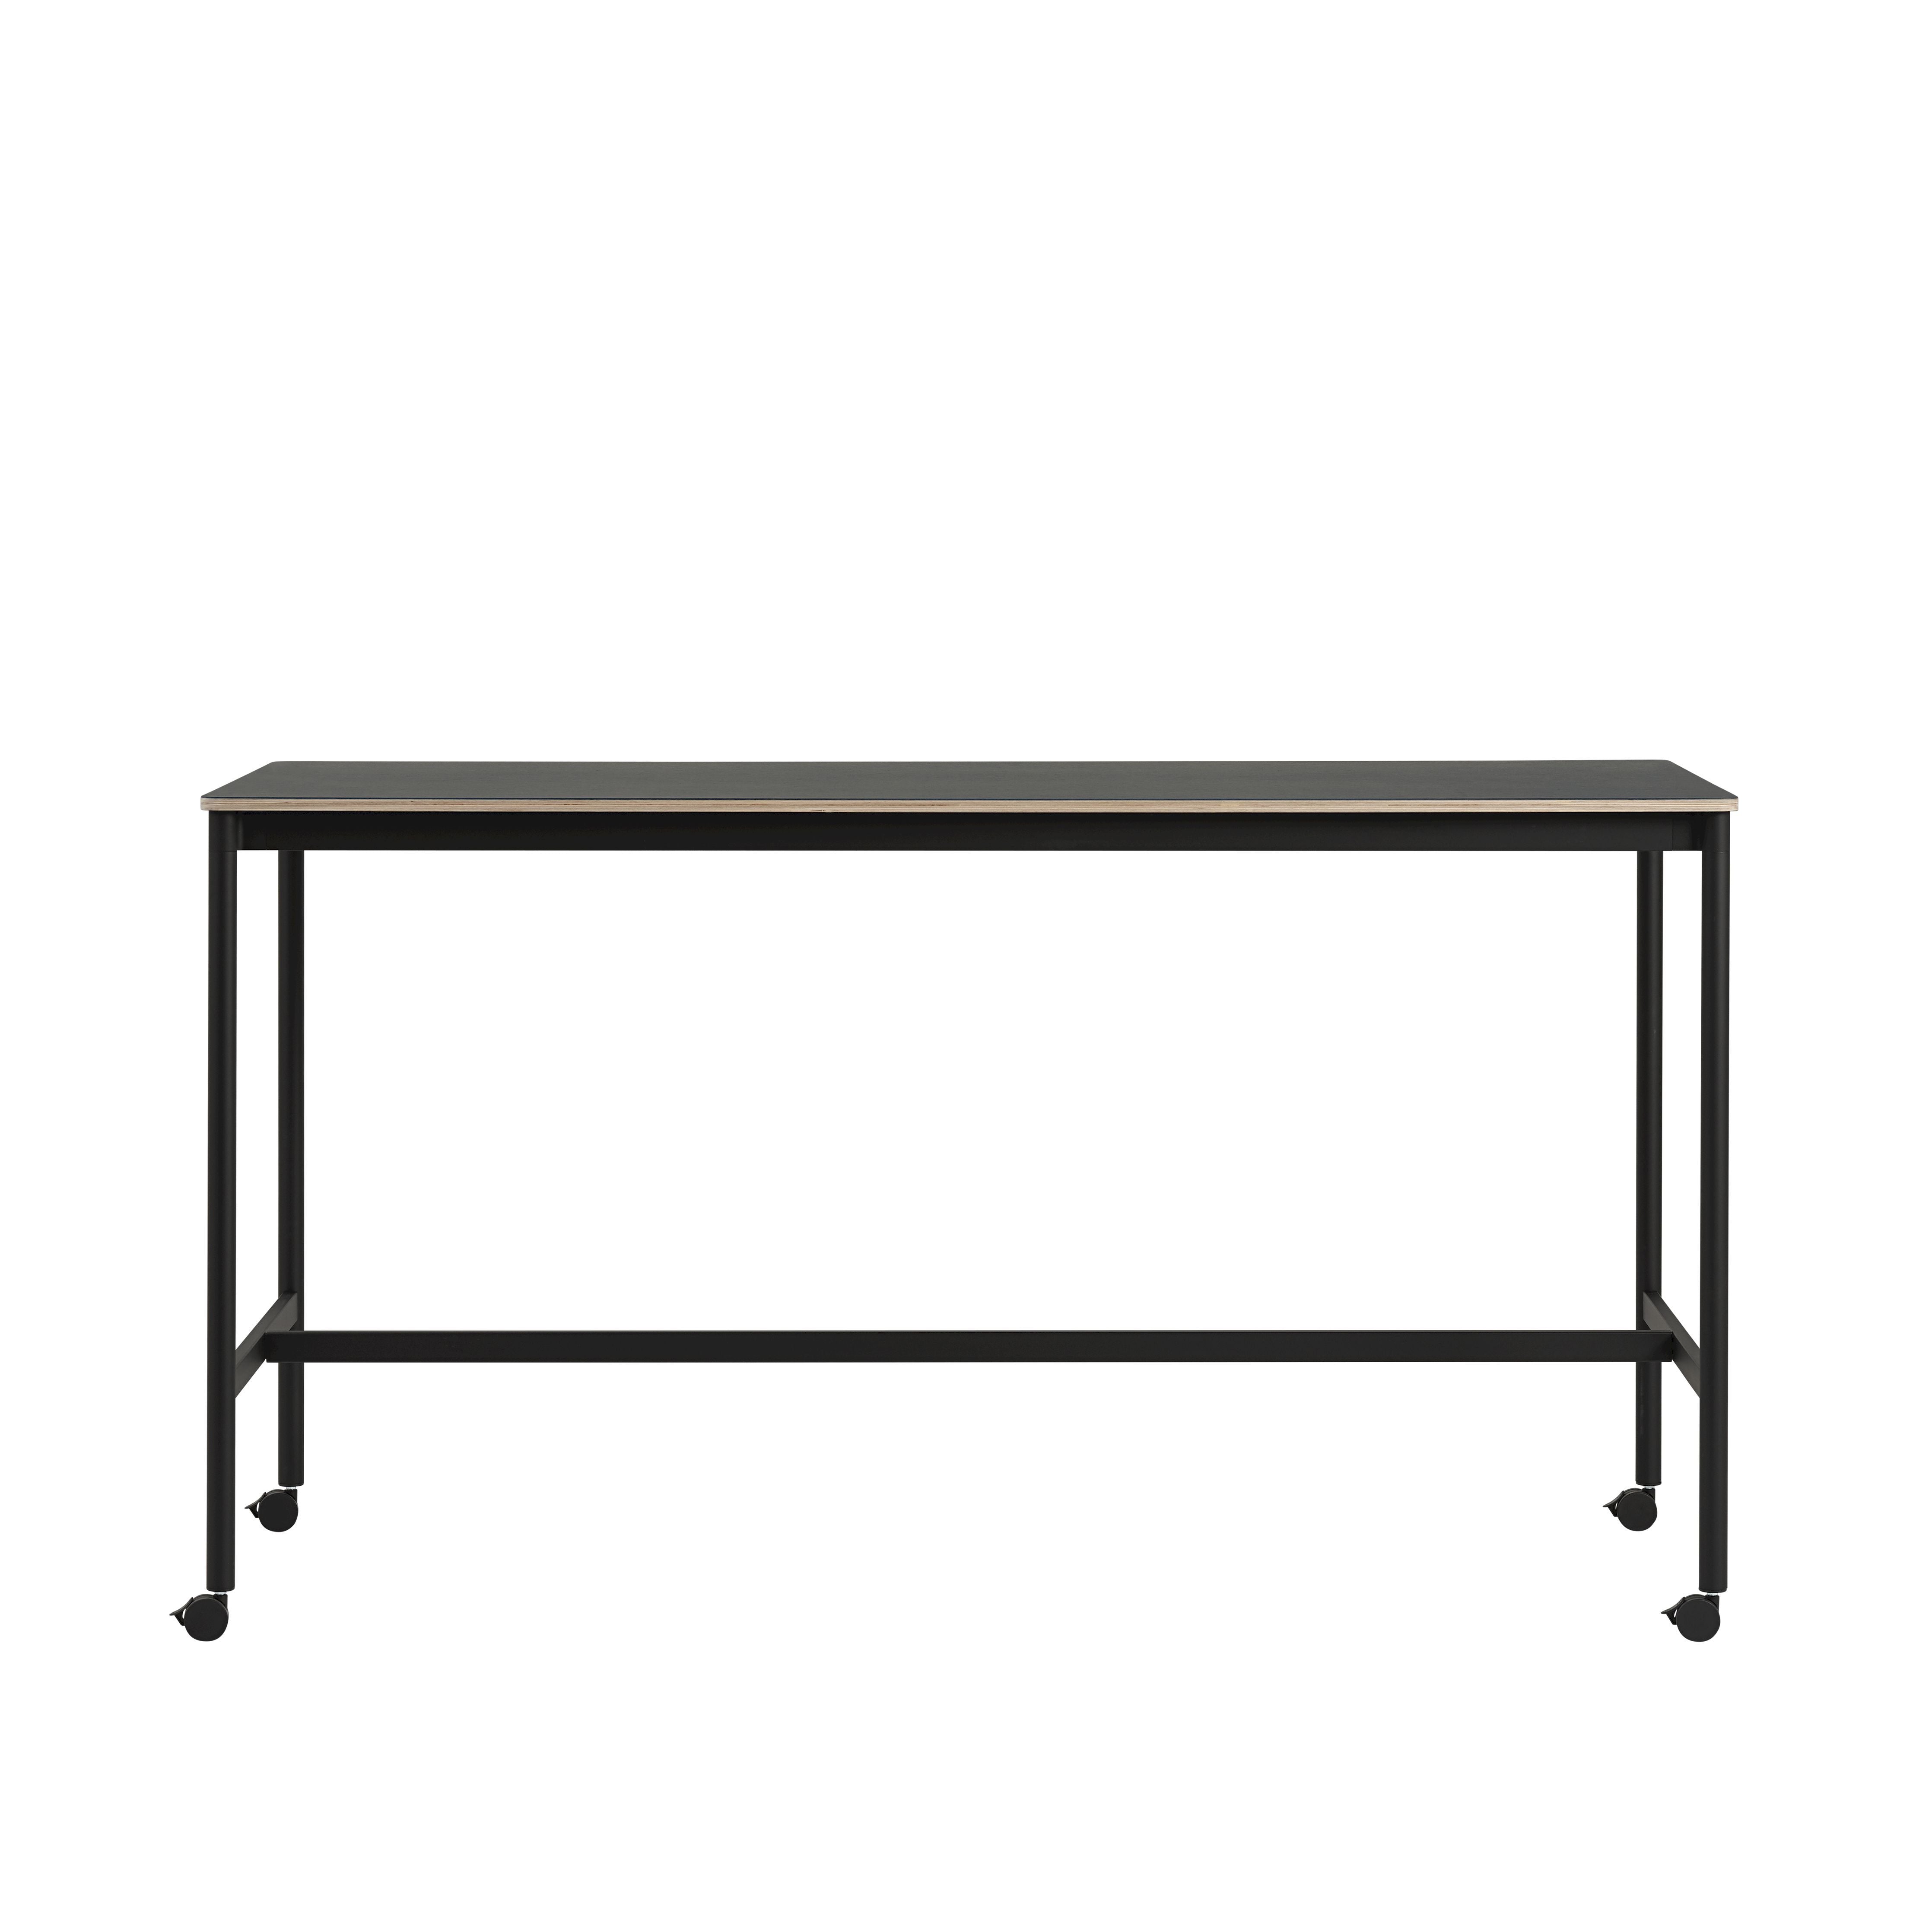 Muuto Base High Table M. Rolls 190x85x105 cm, černý nanolaminát/černá překližka